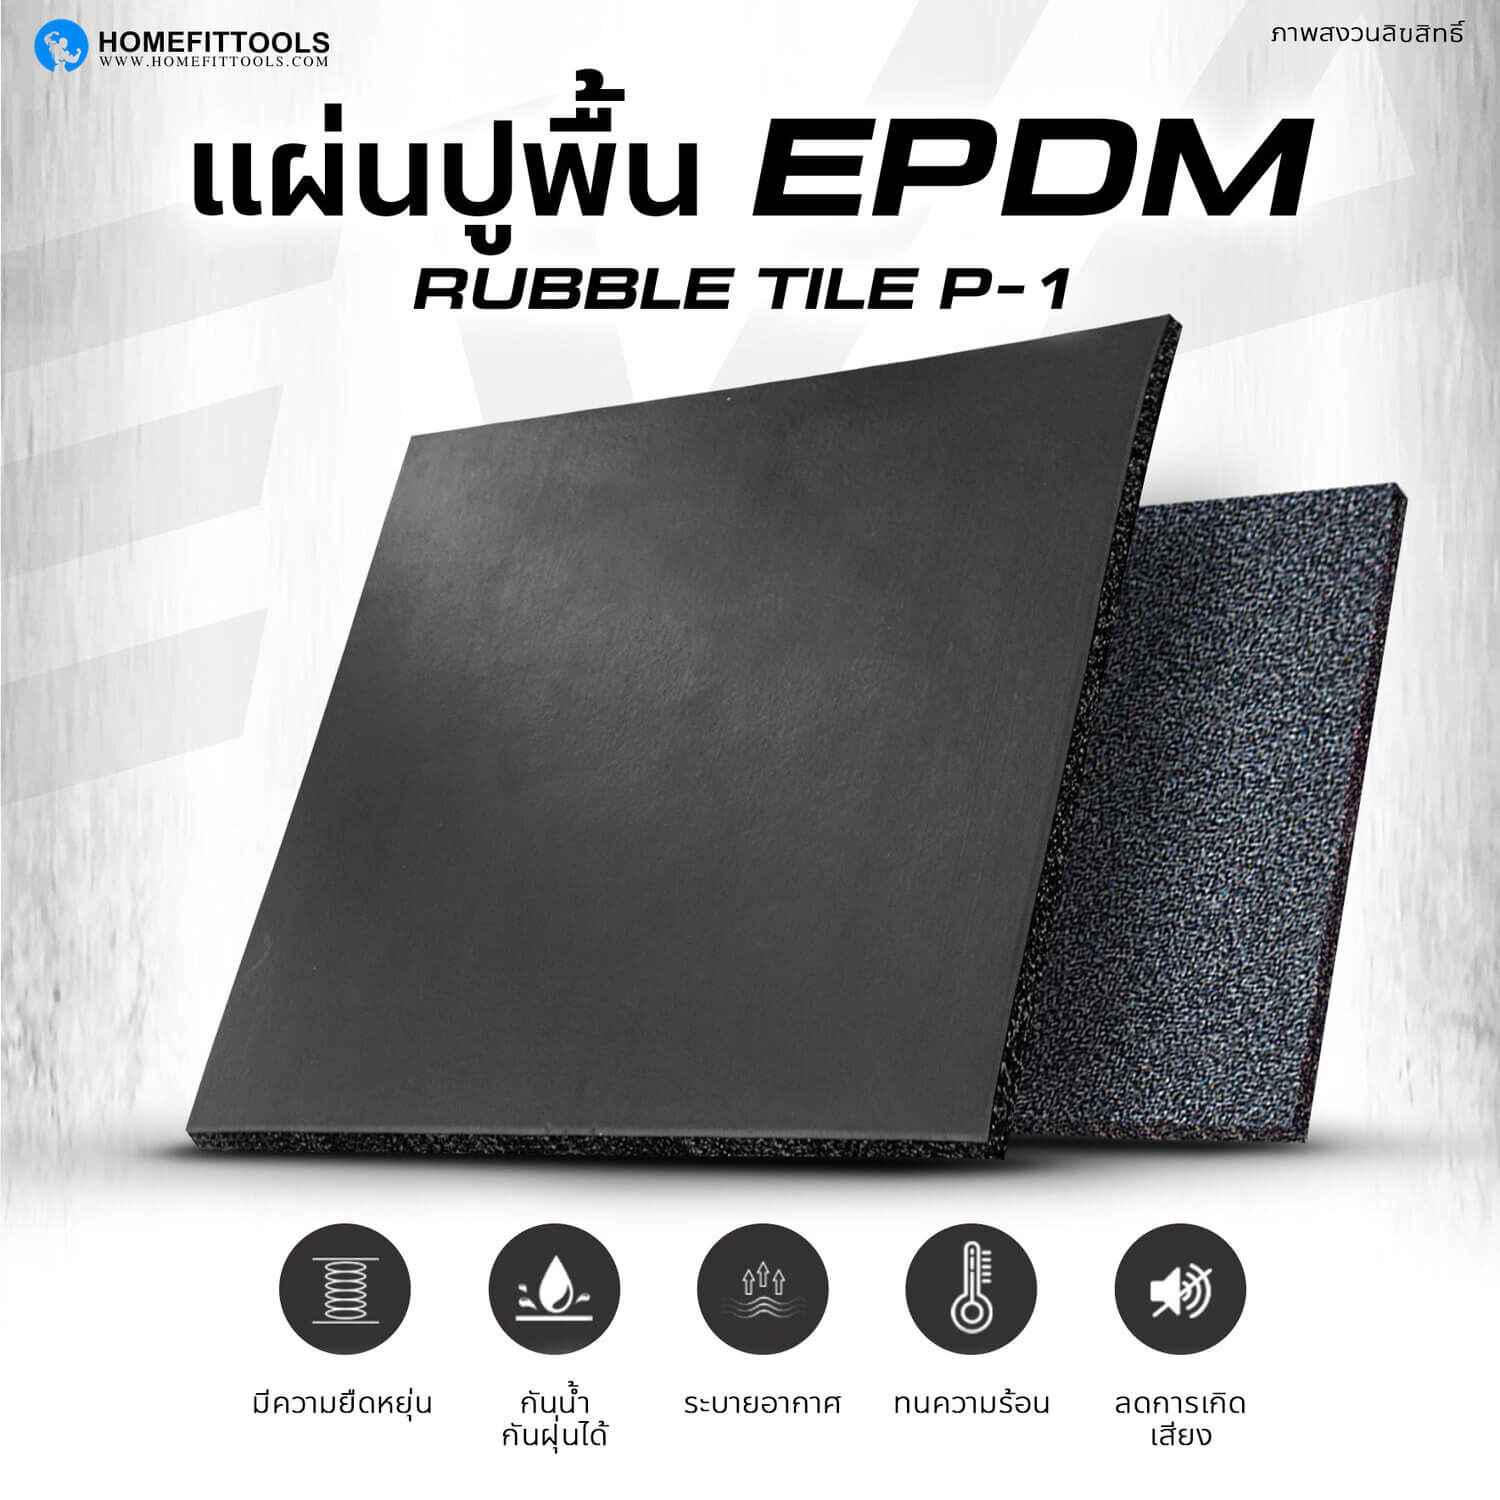 แผ่นยางปูพื้น EPDM Rubber Tile P-1 แผ่นยางปูพื้น